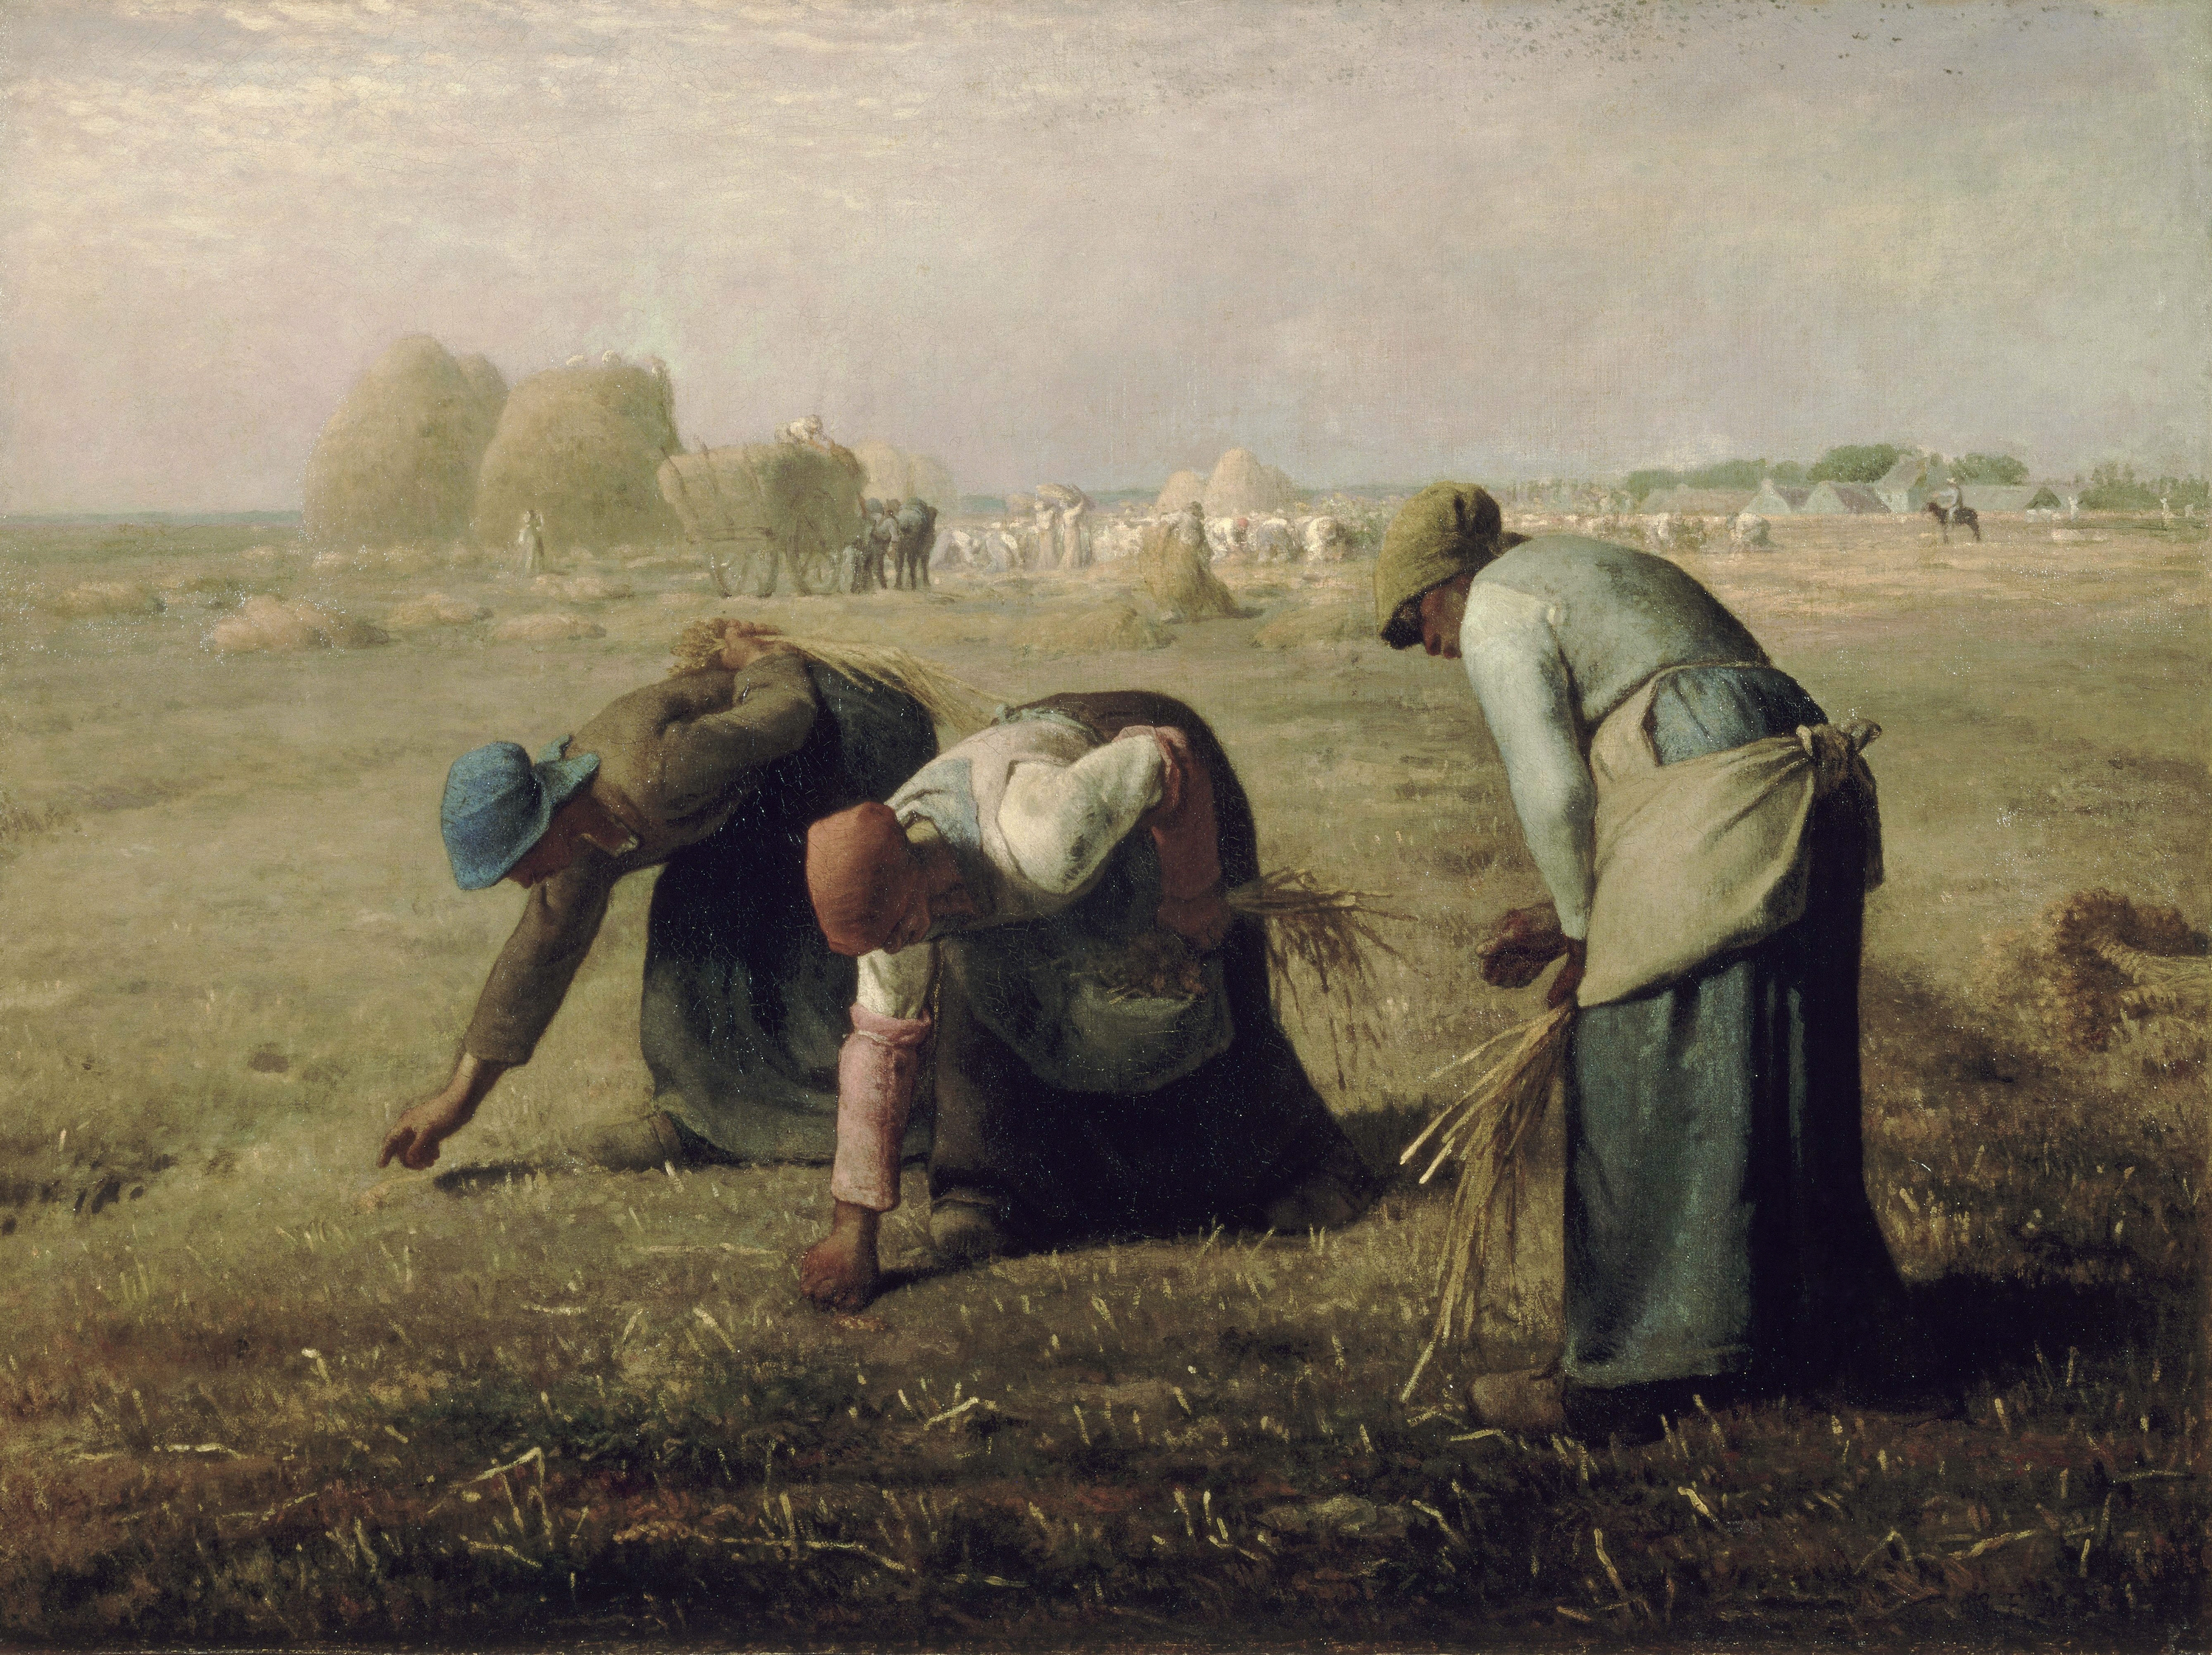 Culegătoarele de spice by Jean-François Millet - 1857 - 83.8 × 111.8 cm 